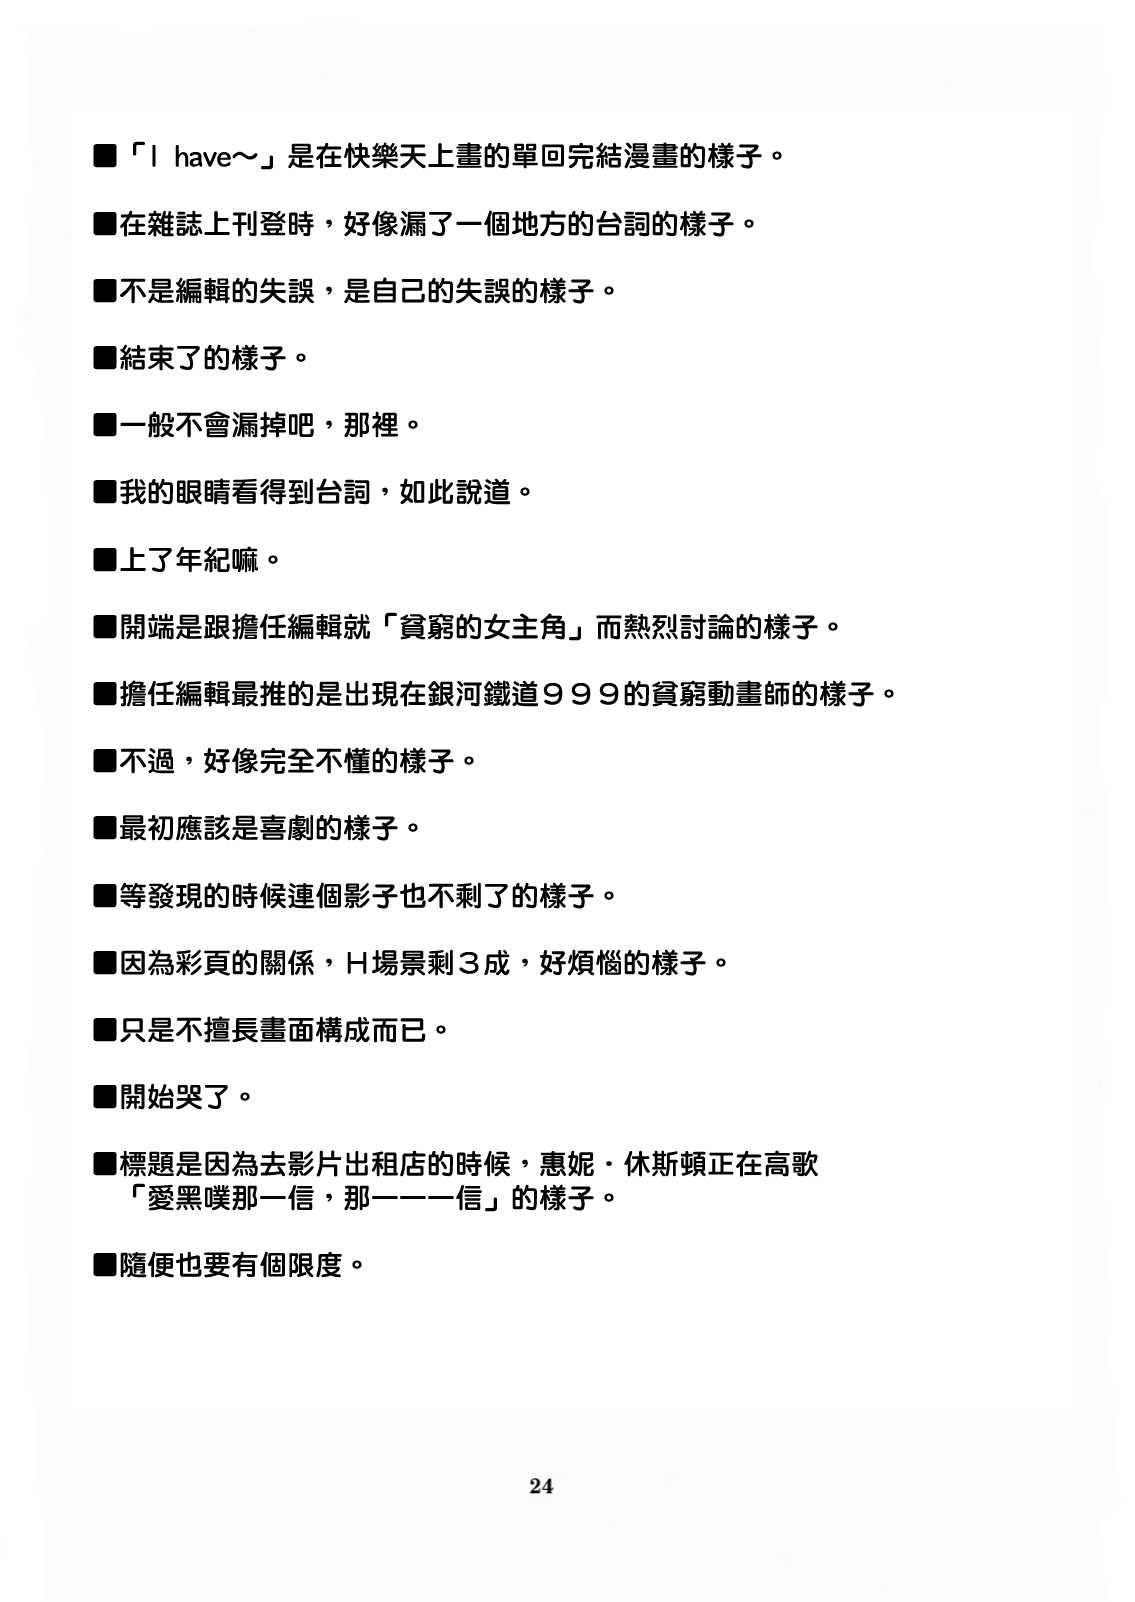 (C69) [Chotto Dake Aruyo. (Takemura Sesshu)] I have nothing, nothing...but... (original) [Chinese] (C69) (同人誌) [チョットだけアルヨ。(竹村雪秀)] I have nothing, nothing...but... (オリジナル) [Genesis漢化]